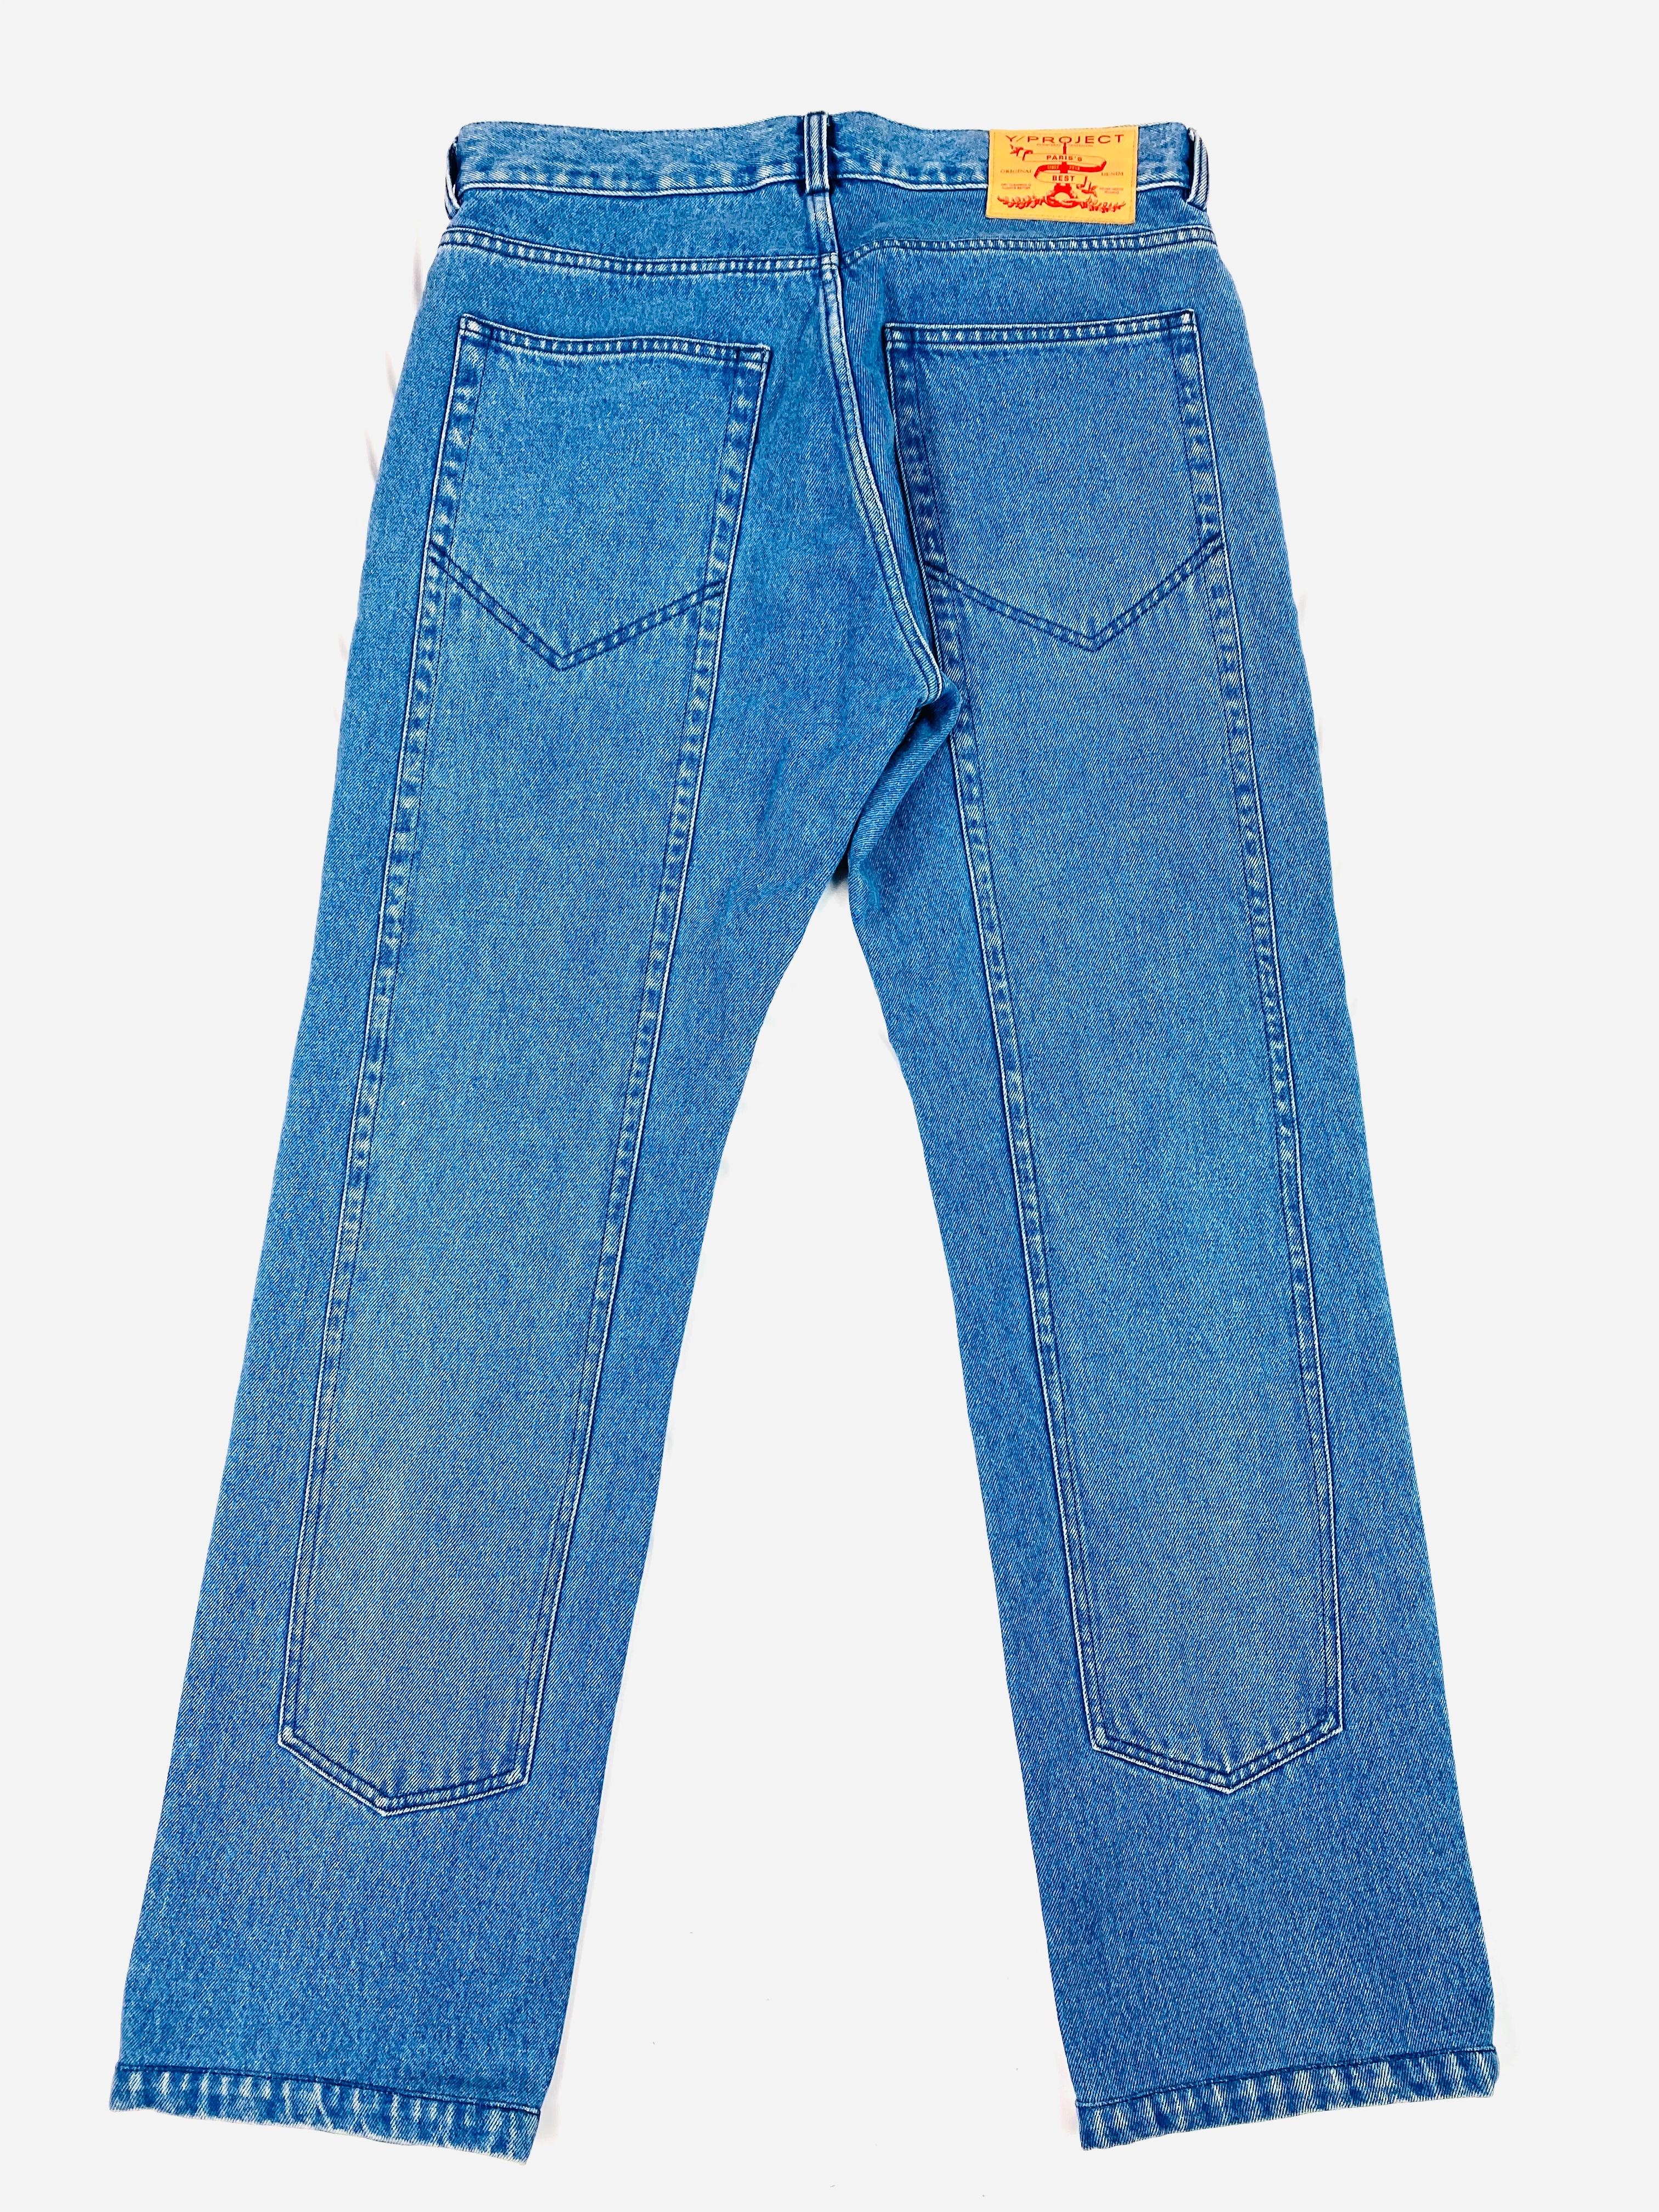 light blue washed denim jeans